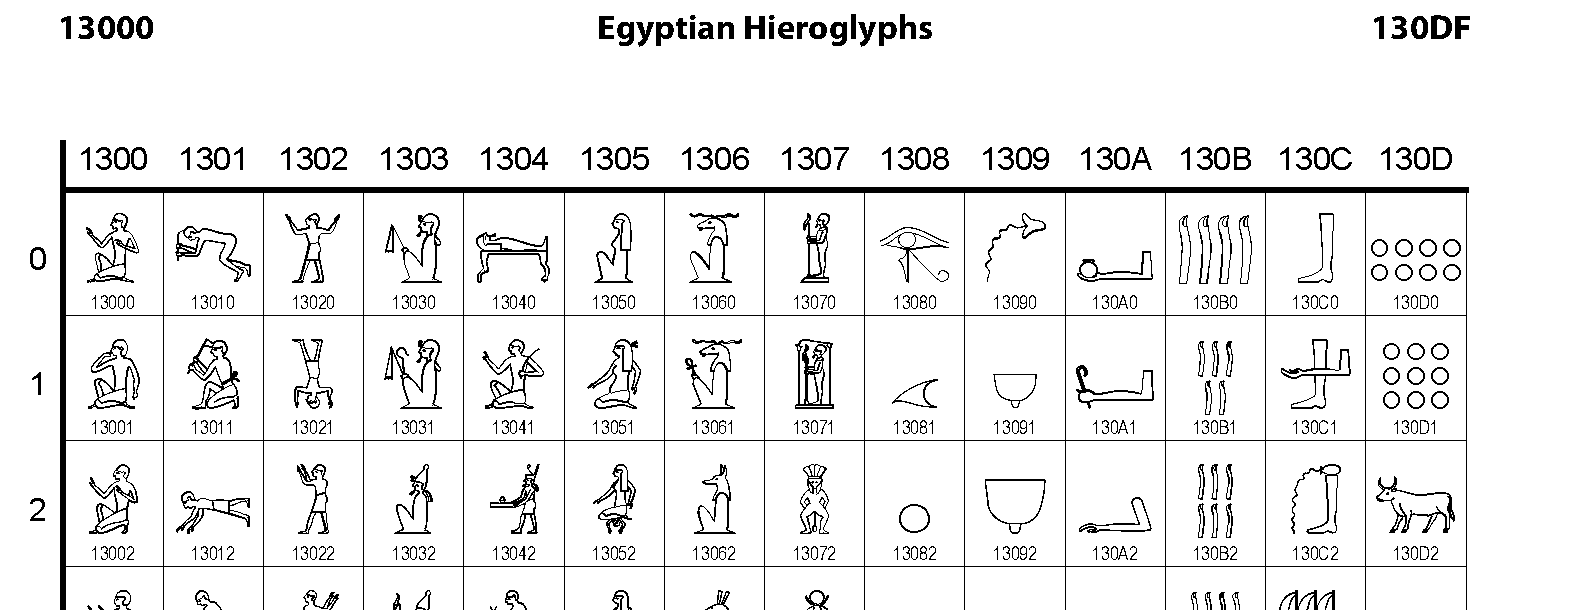 13000 Egyptian Hieroglyphs